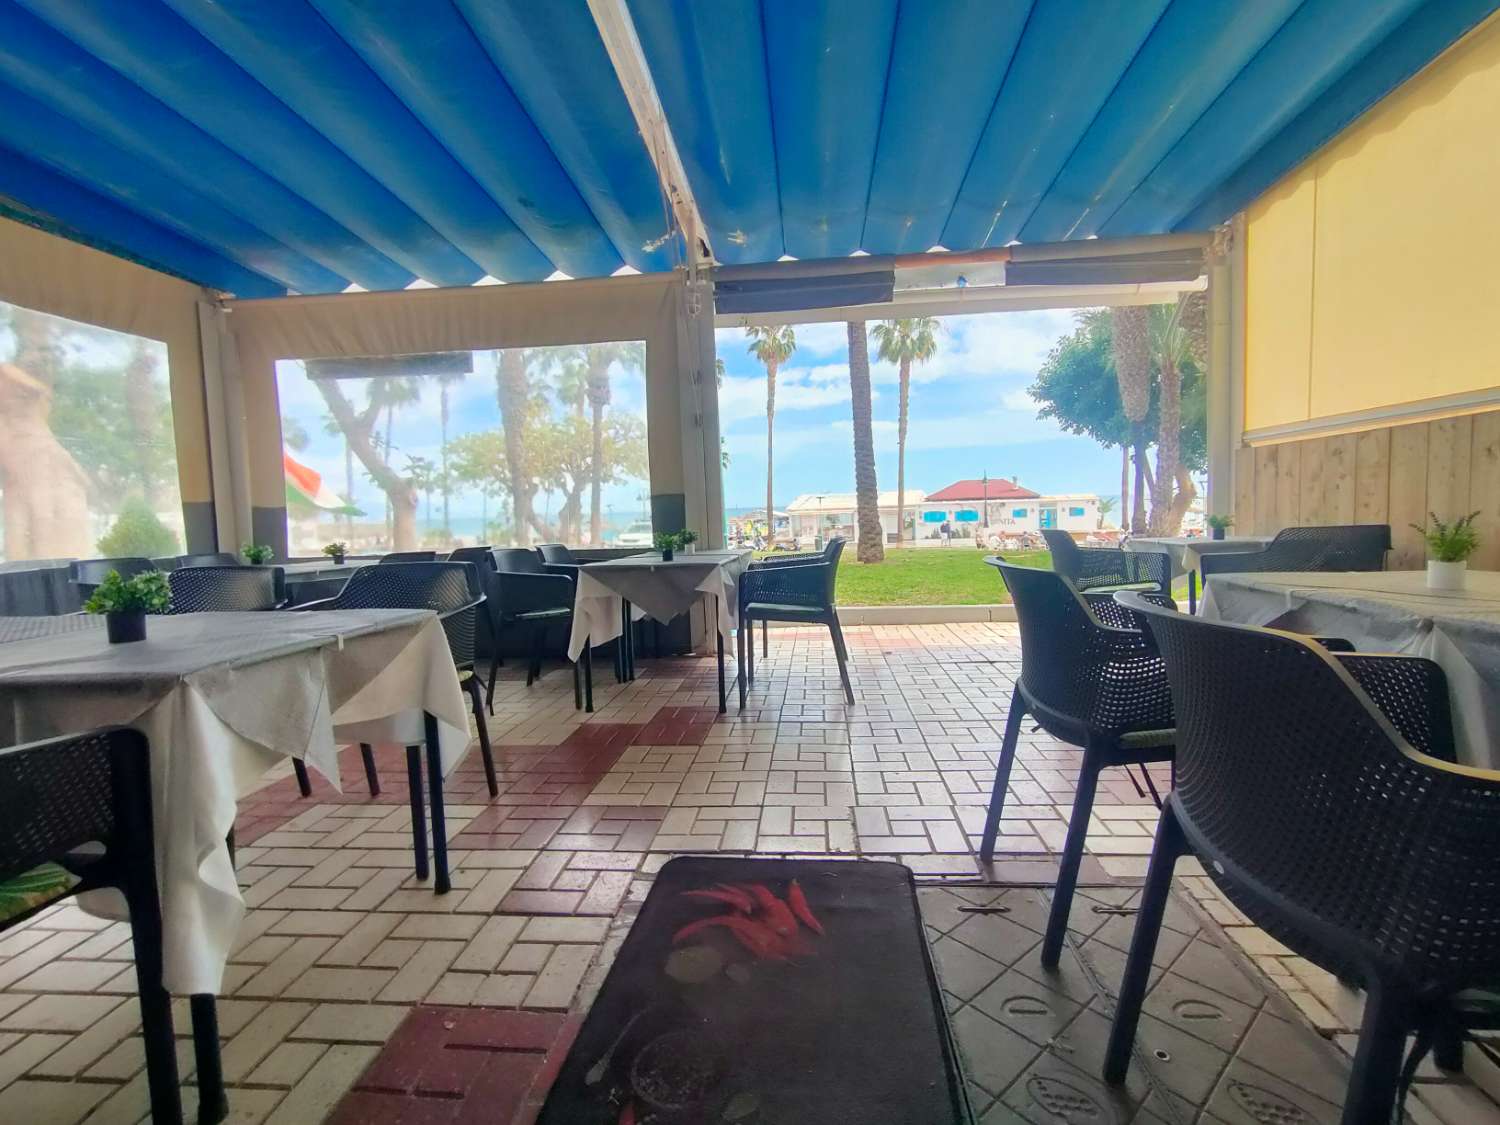 Restaurant & Cafe Bar in Torremolinos - Beach Front